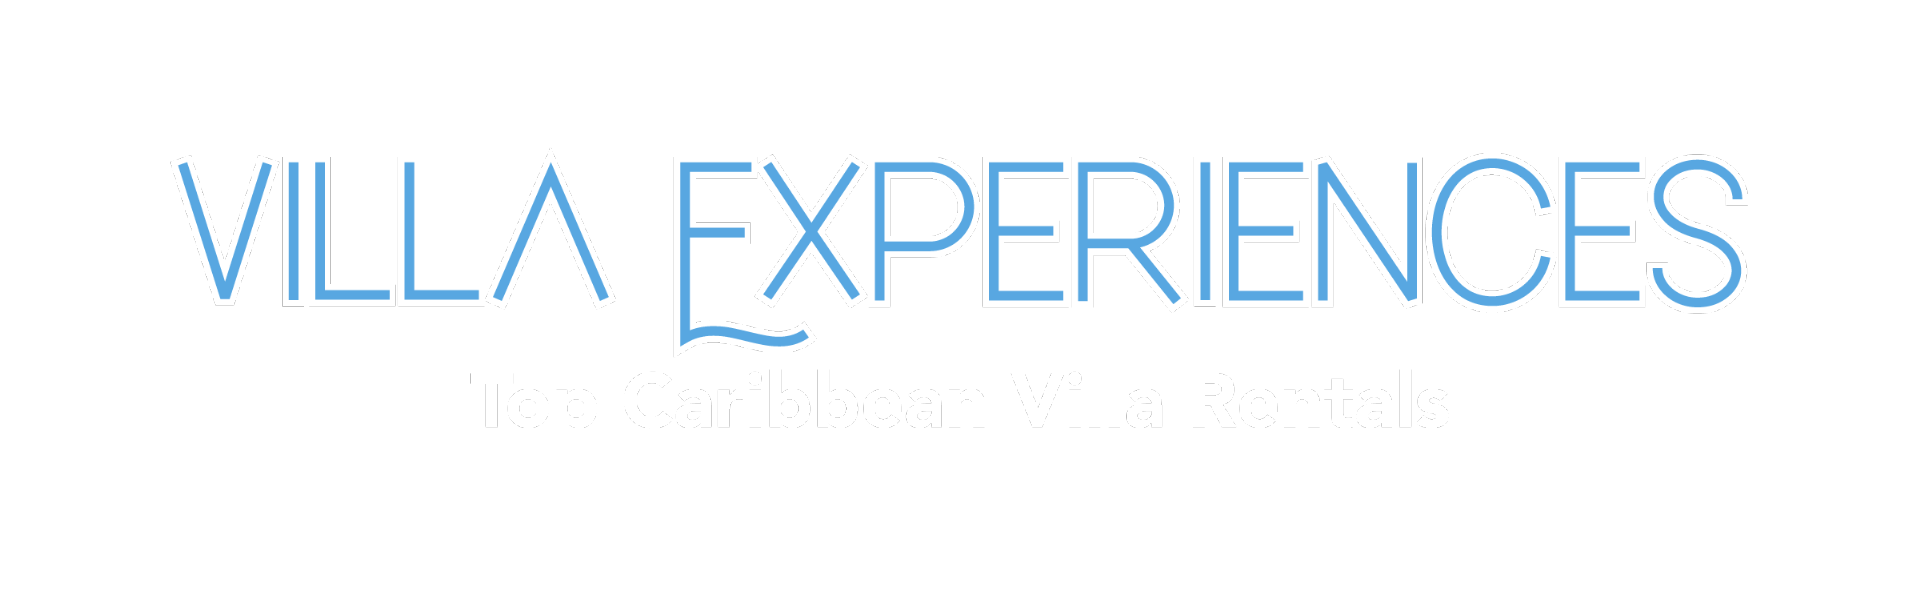 Top Caribbean Villa Rentals